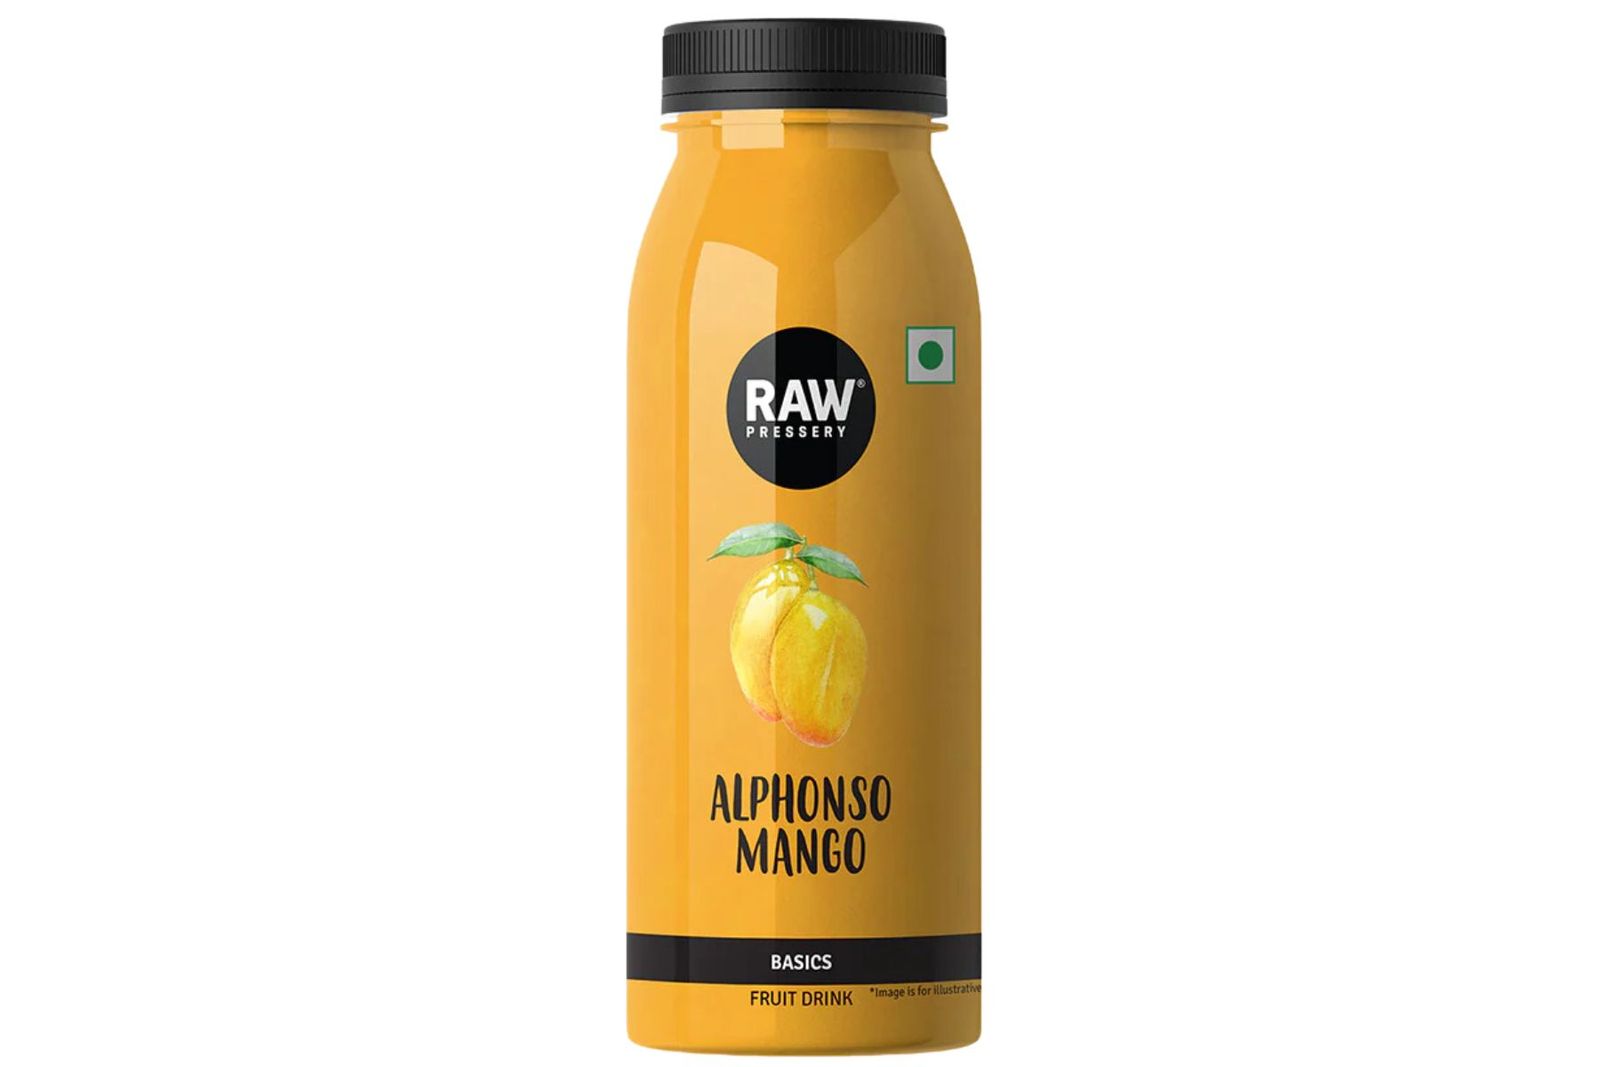 Raw Pressery Alphonso Mango Juice